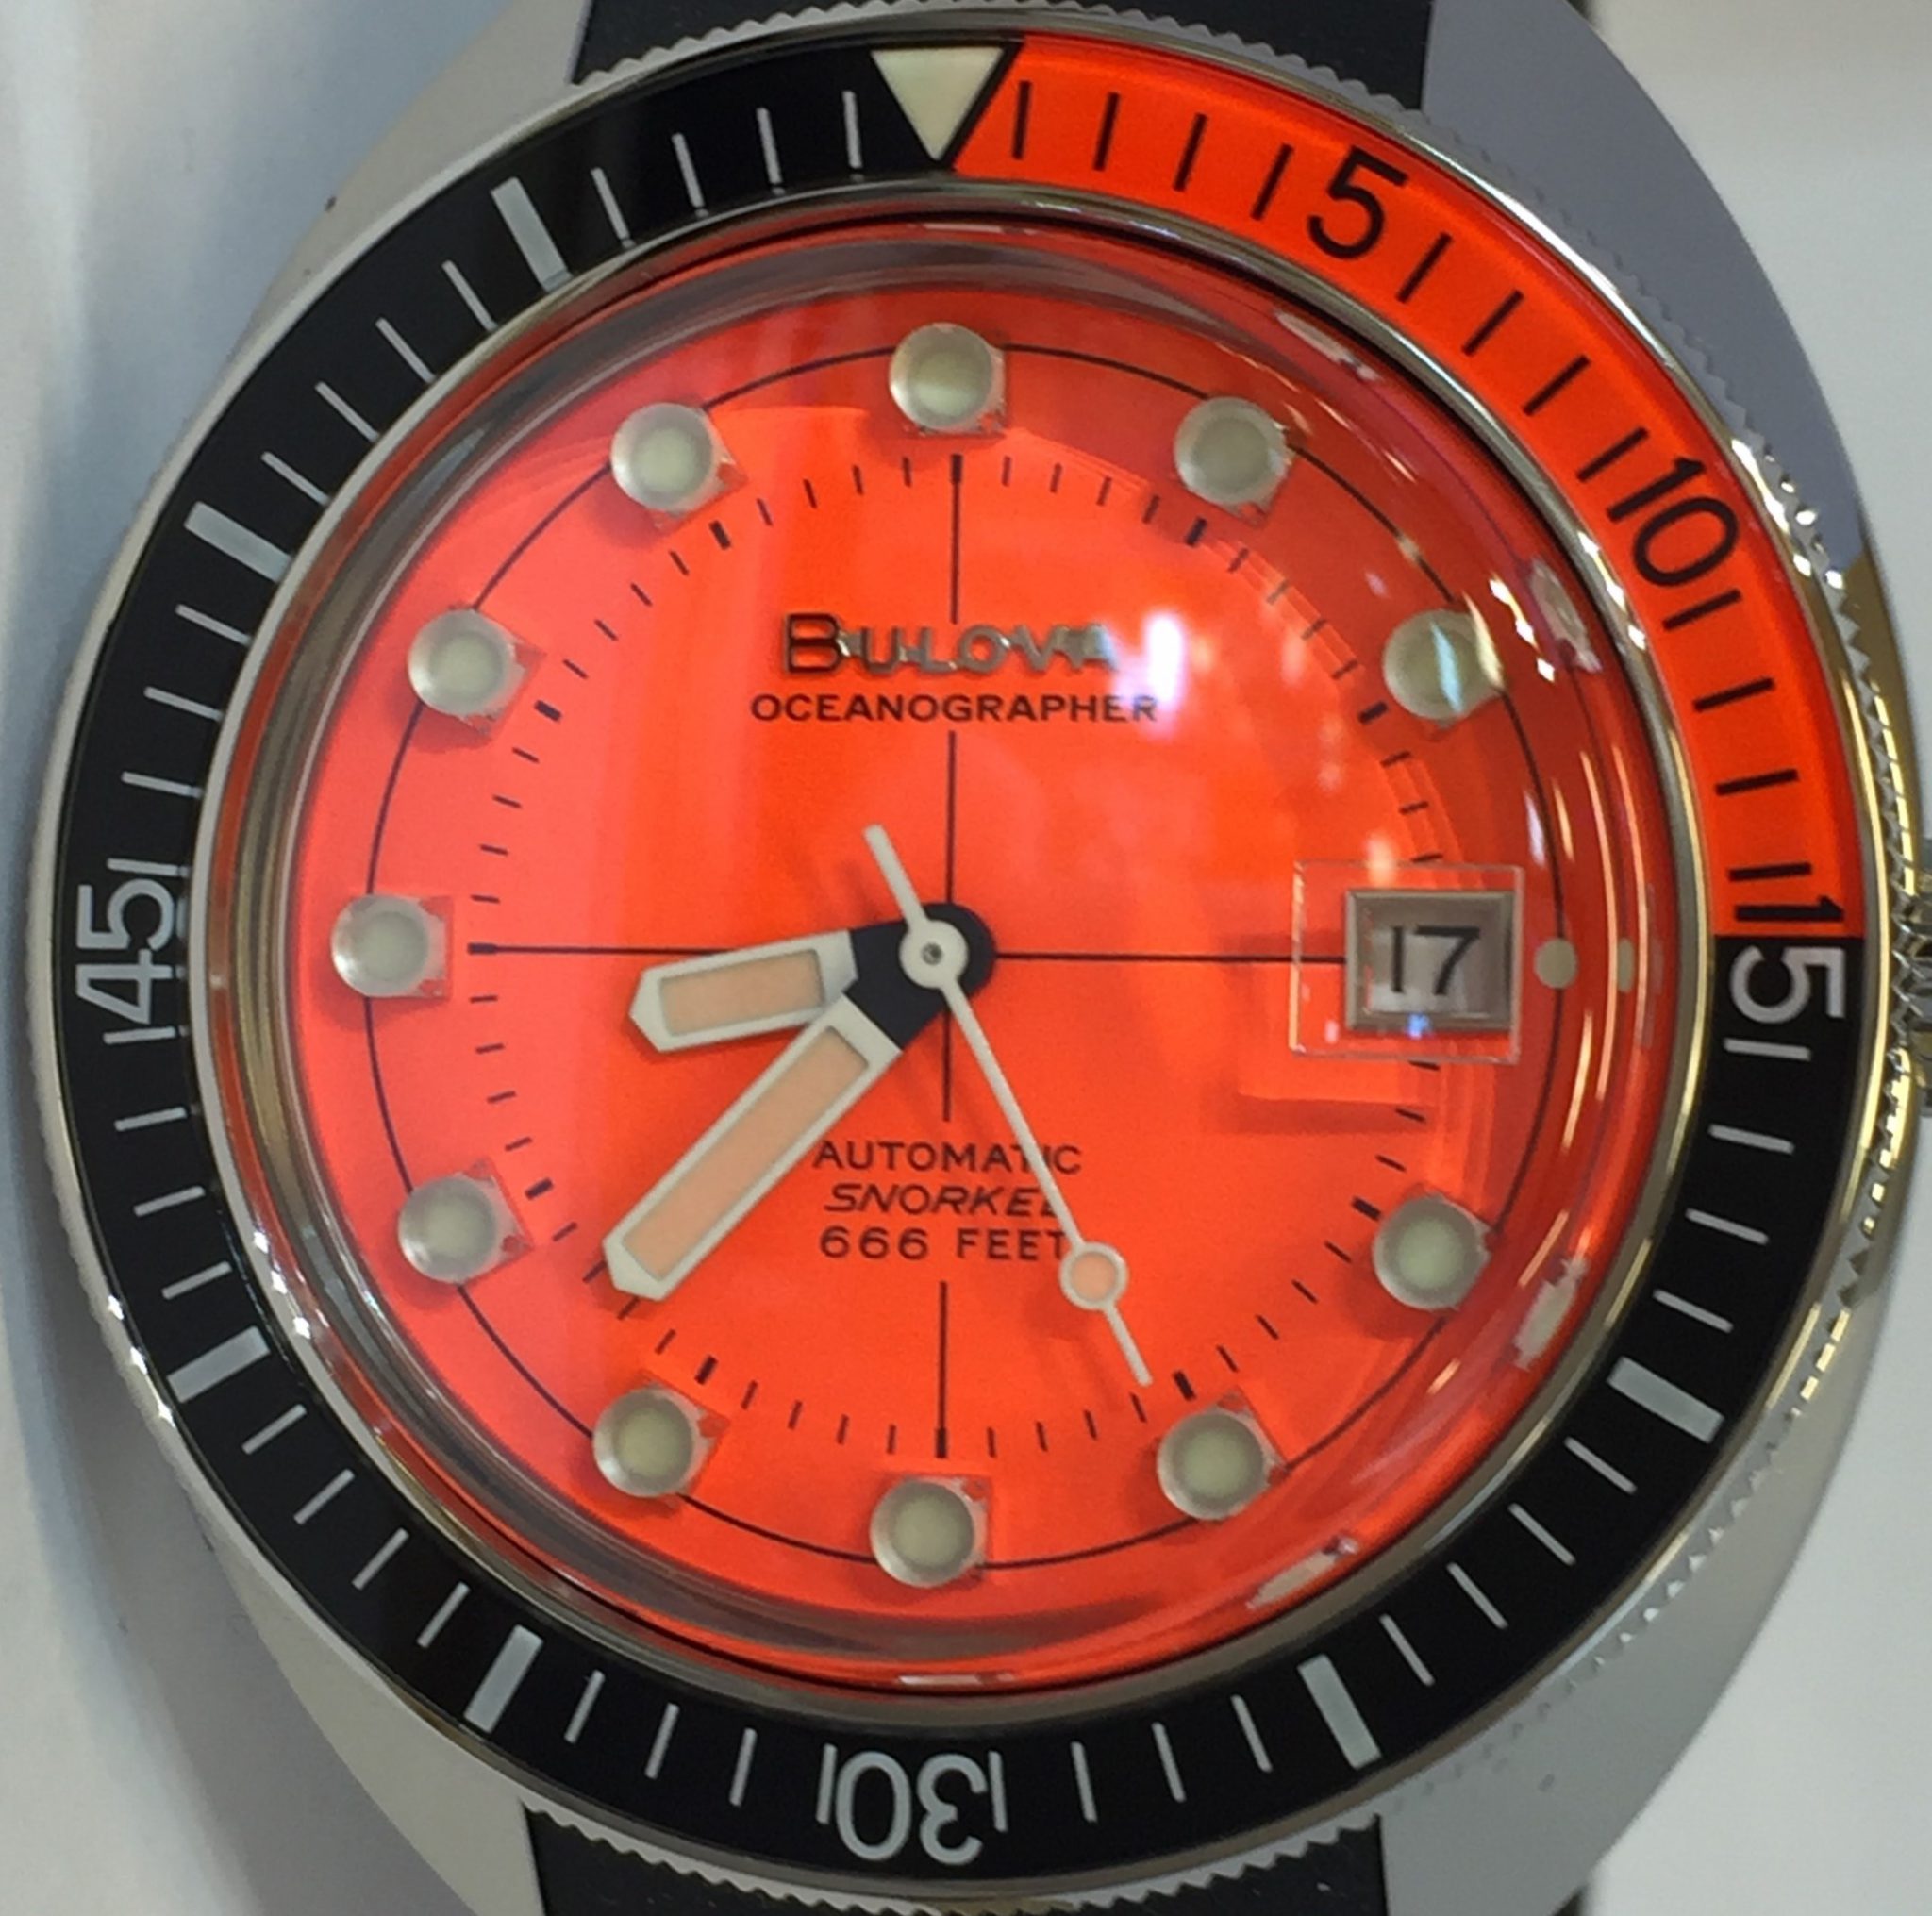 【NEW】BULOVA ブローバ 96B350 オーシャノグラファー、デビルダイバー復刻モデルを紹介致します。 つくばの時計店 オンタイム